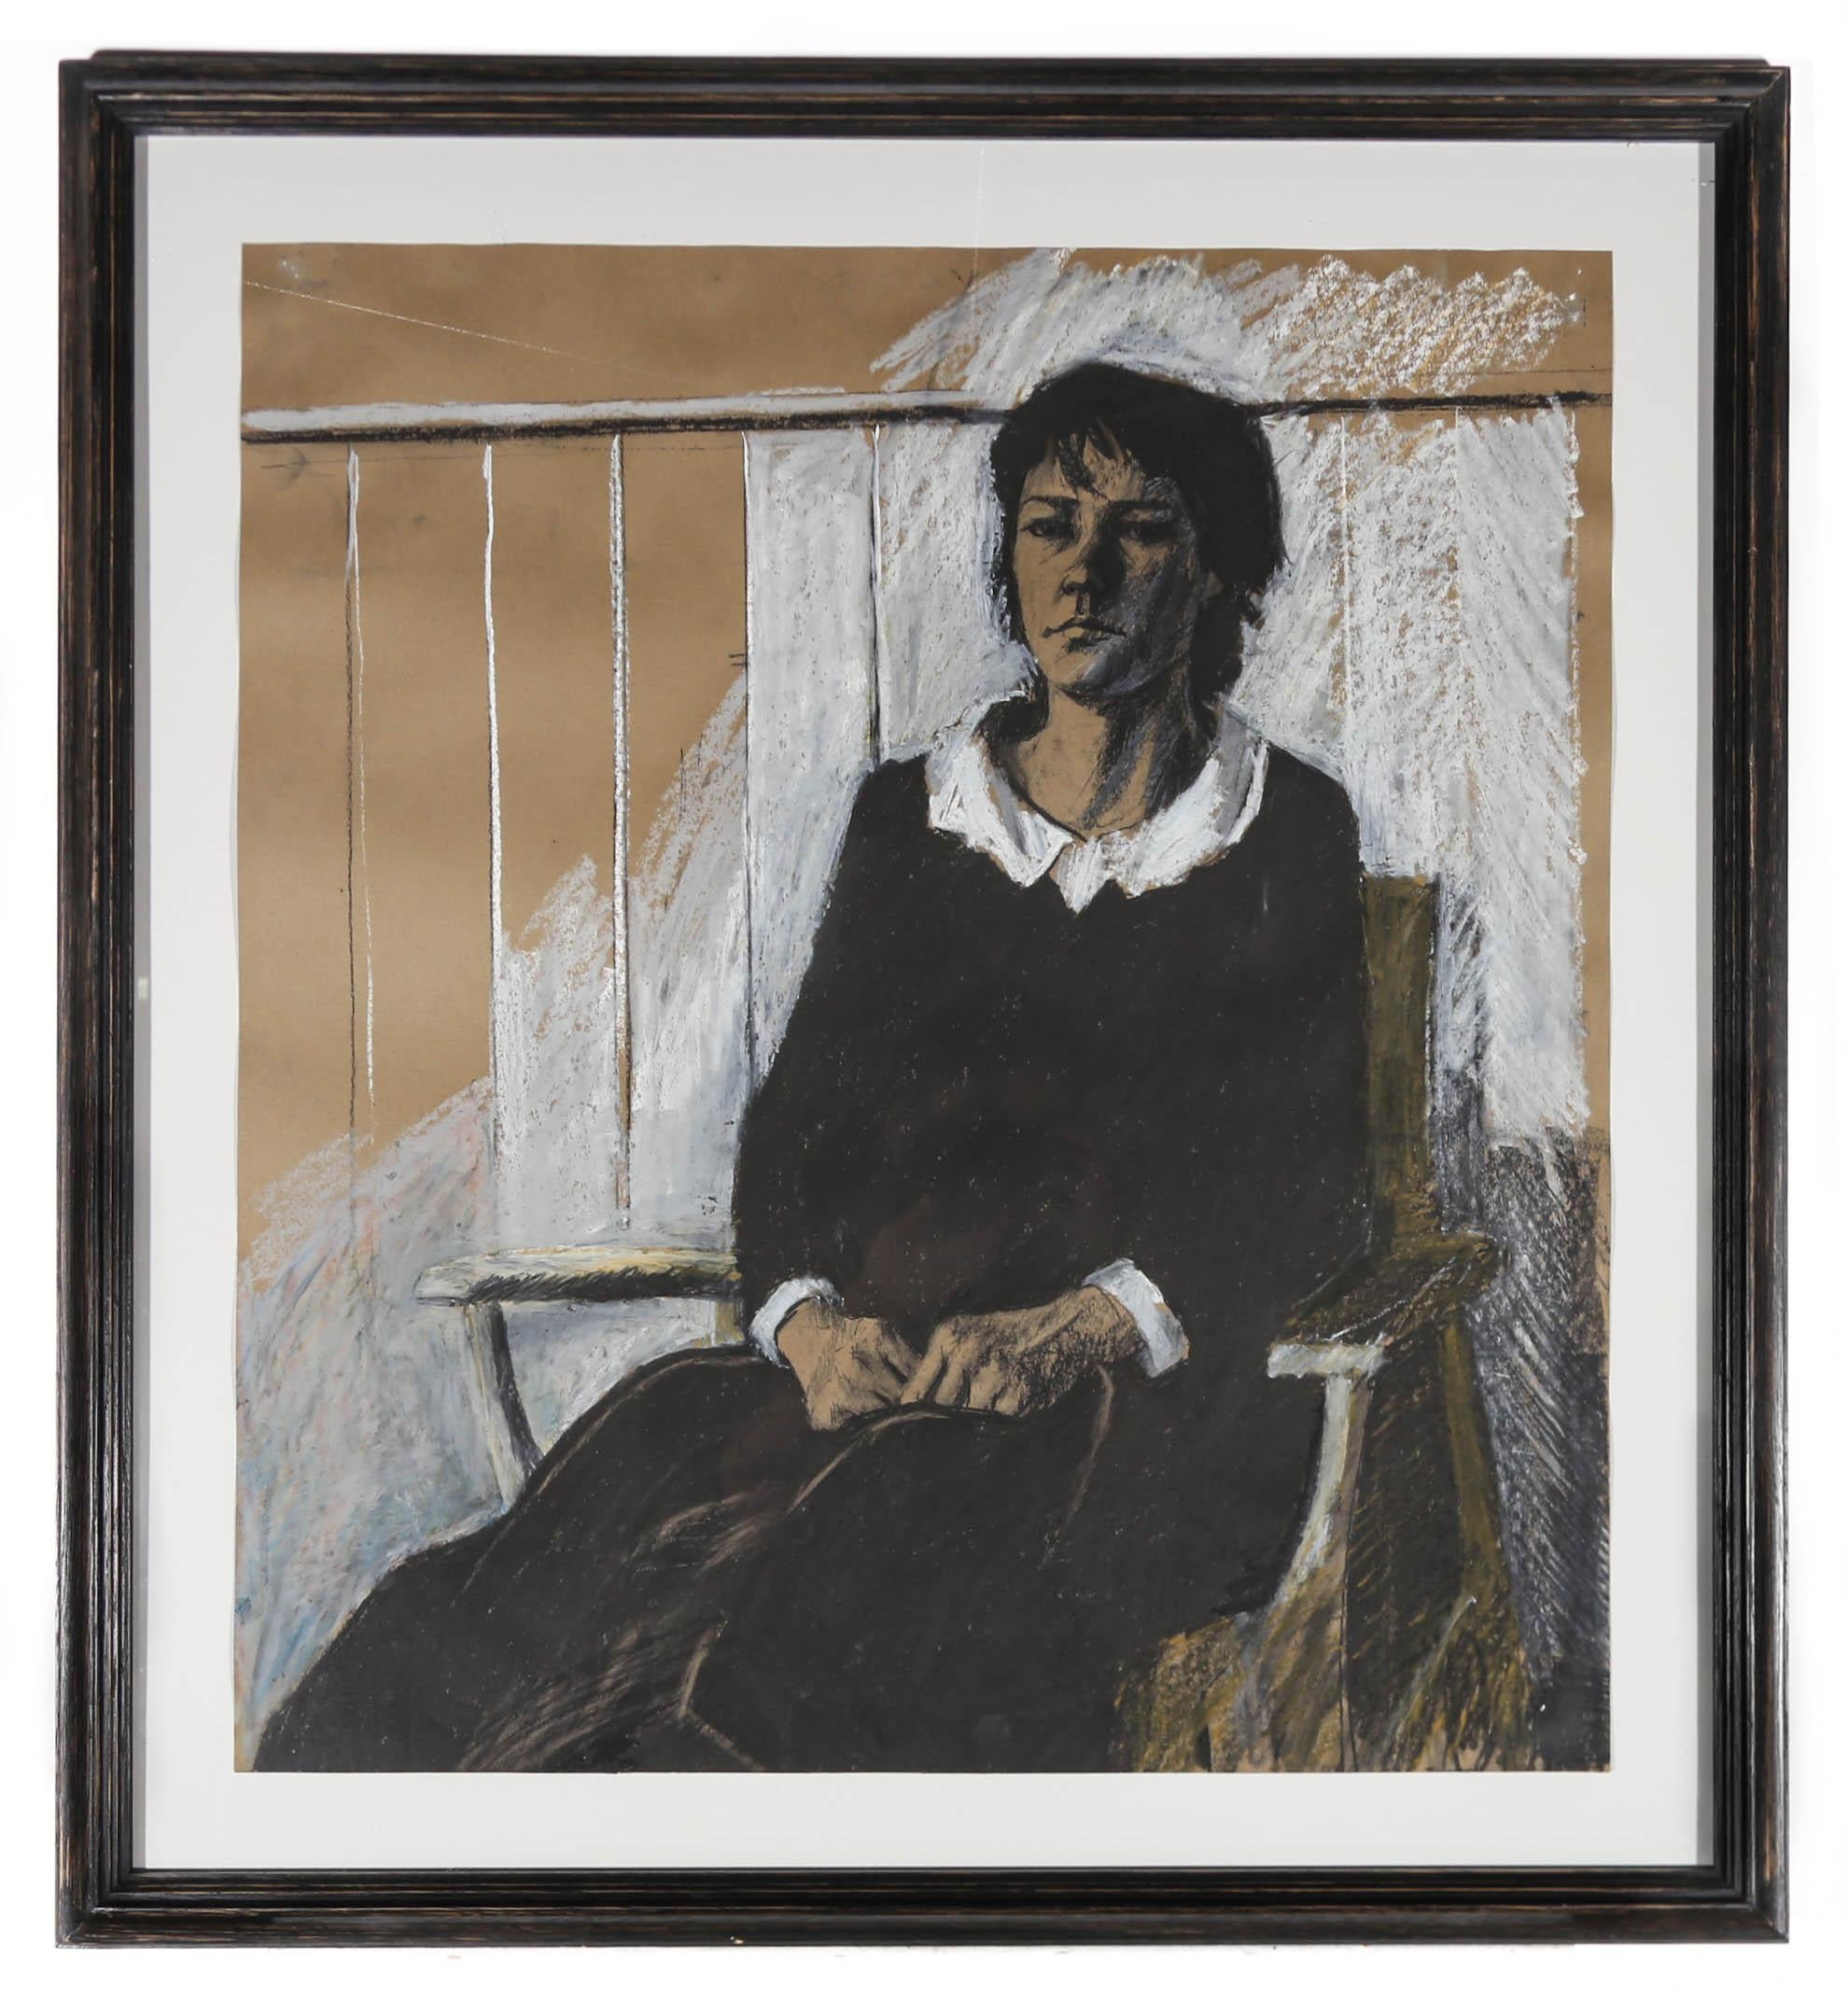 Das mit Kohle und Kreide aufgenommene Porträt zeigt eine Frau in einem schwarzen Kleid, die auf einem Stuhl sitzt. Der Künstler zeigt, wie sich Schatten über das Gesicht der Frau ziehen und sie düster in die Ferne blickt. Der skizzierte Hintergrund